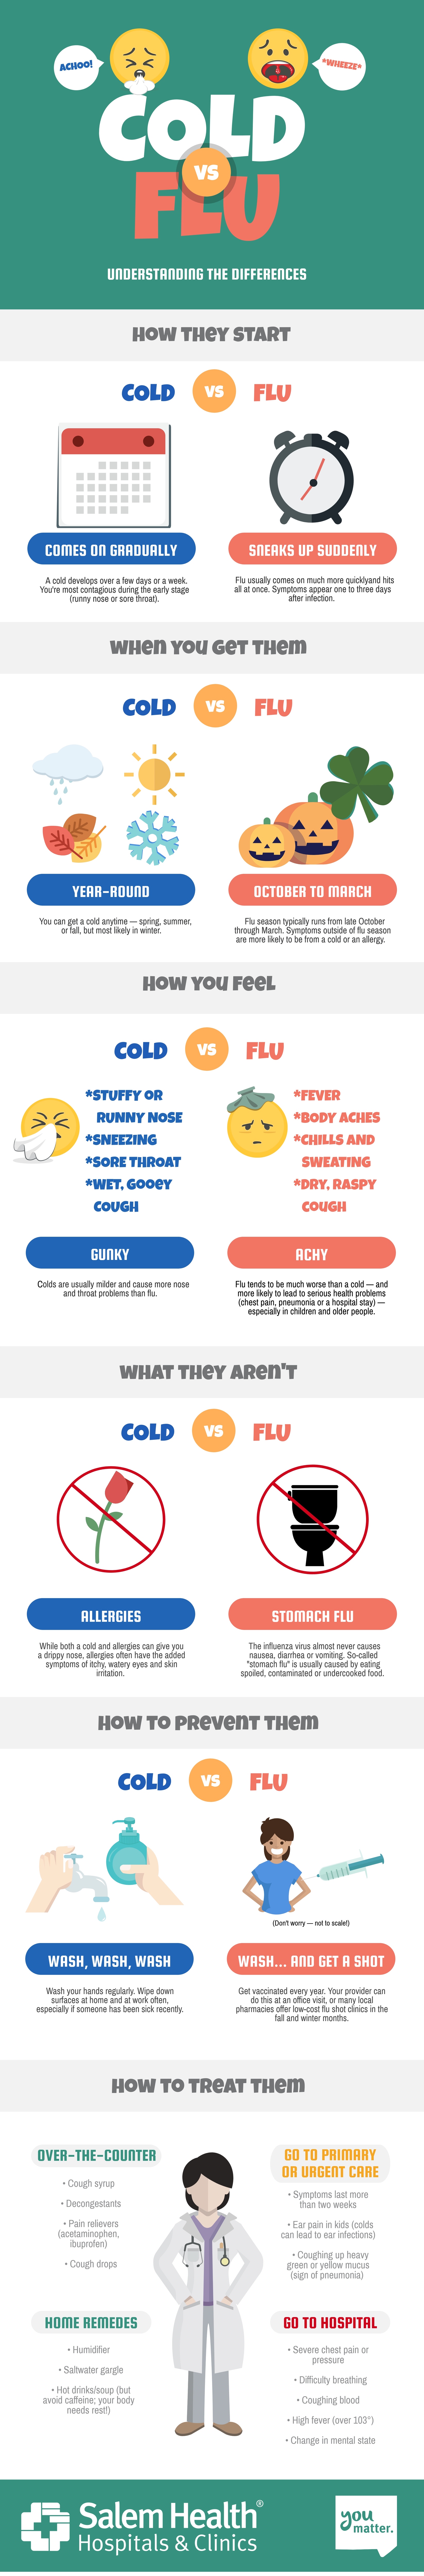 cold vs flu info